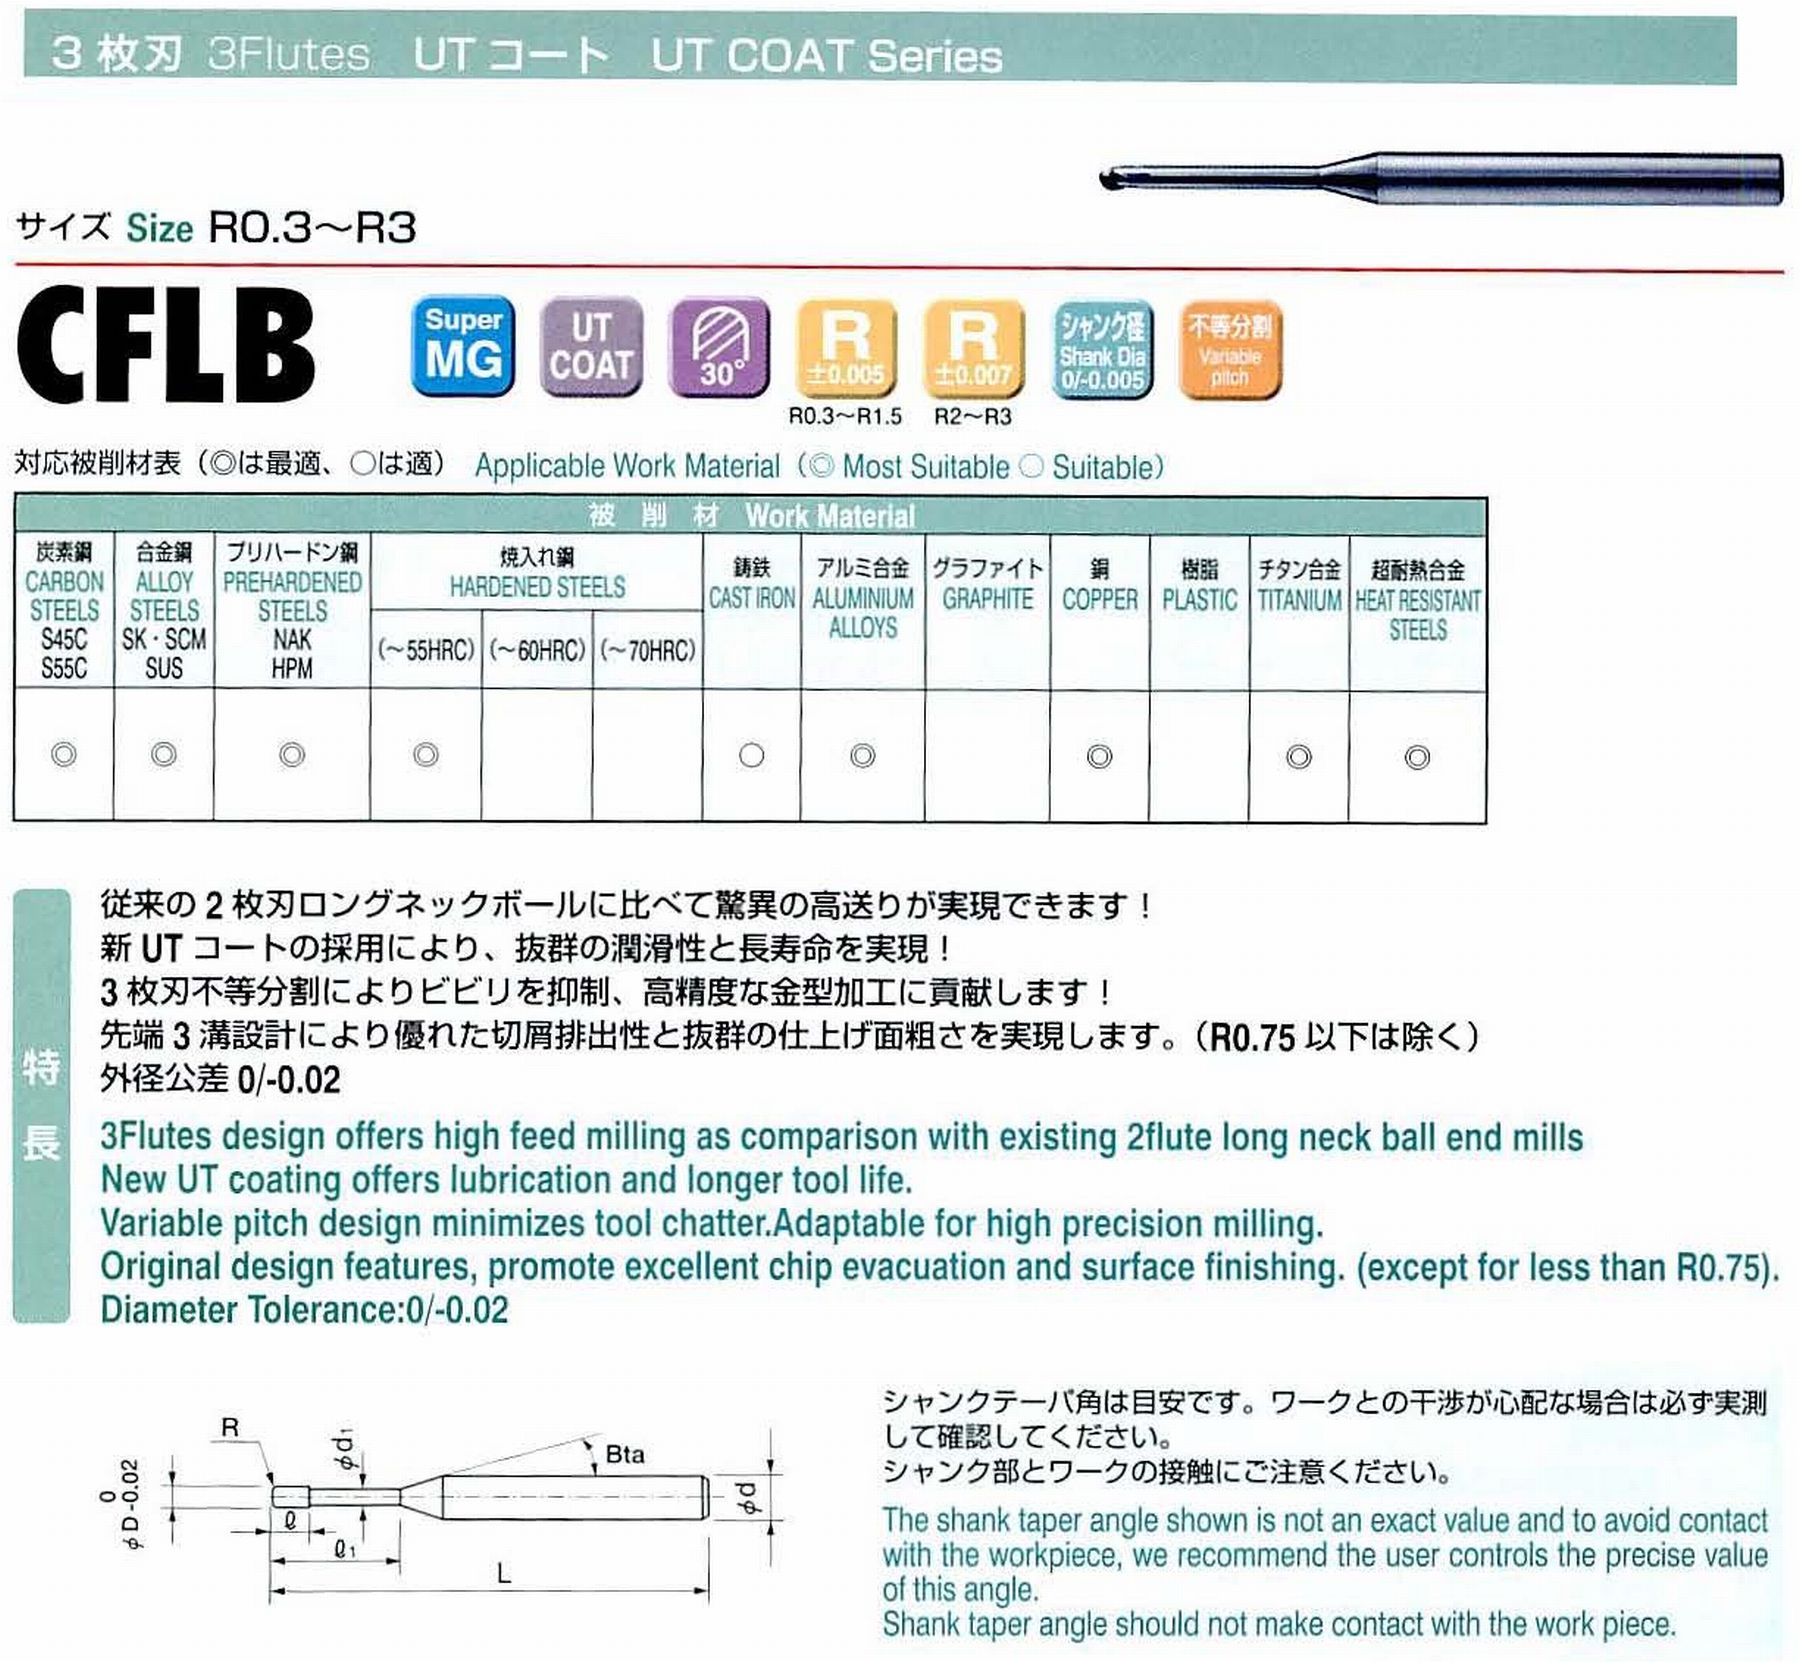 ユニオンツール 3枚刃 CFLB3006-020 ボール半径R0.3 有効長2 刃長0.48 首径0.58 シャンクテーパ角16° 全長50 シャンク径4